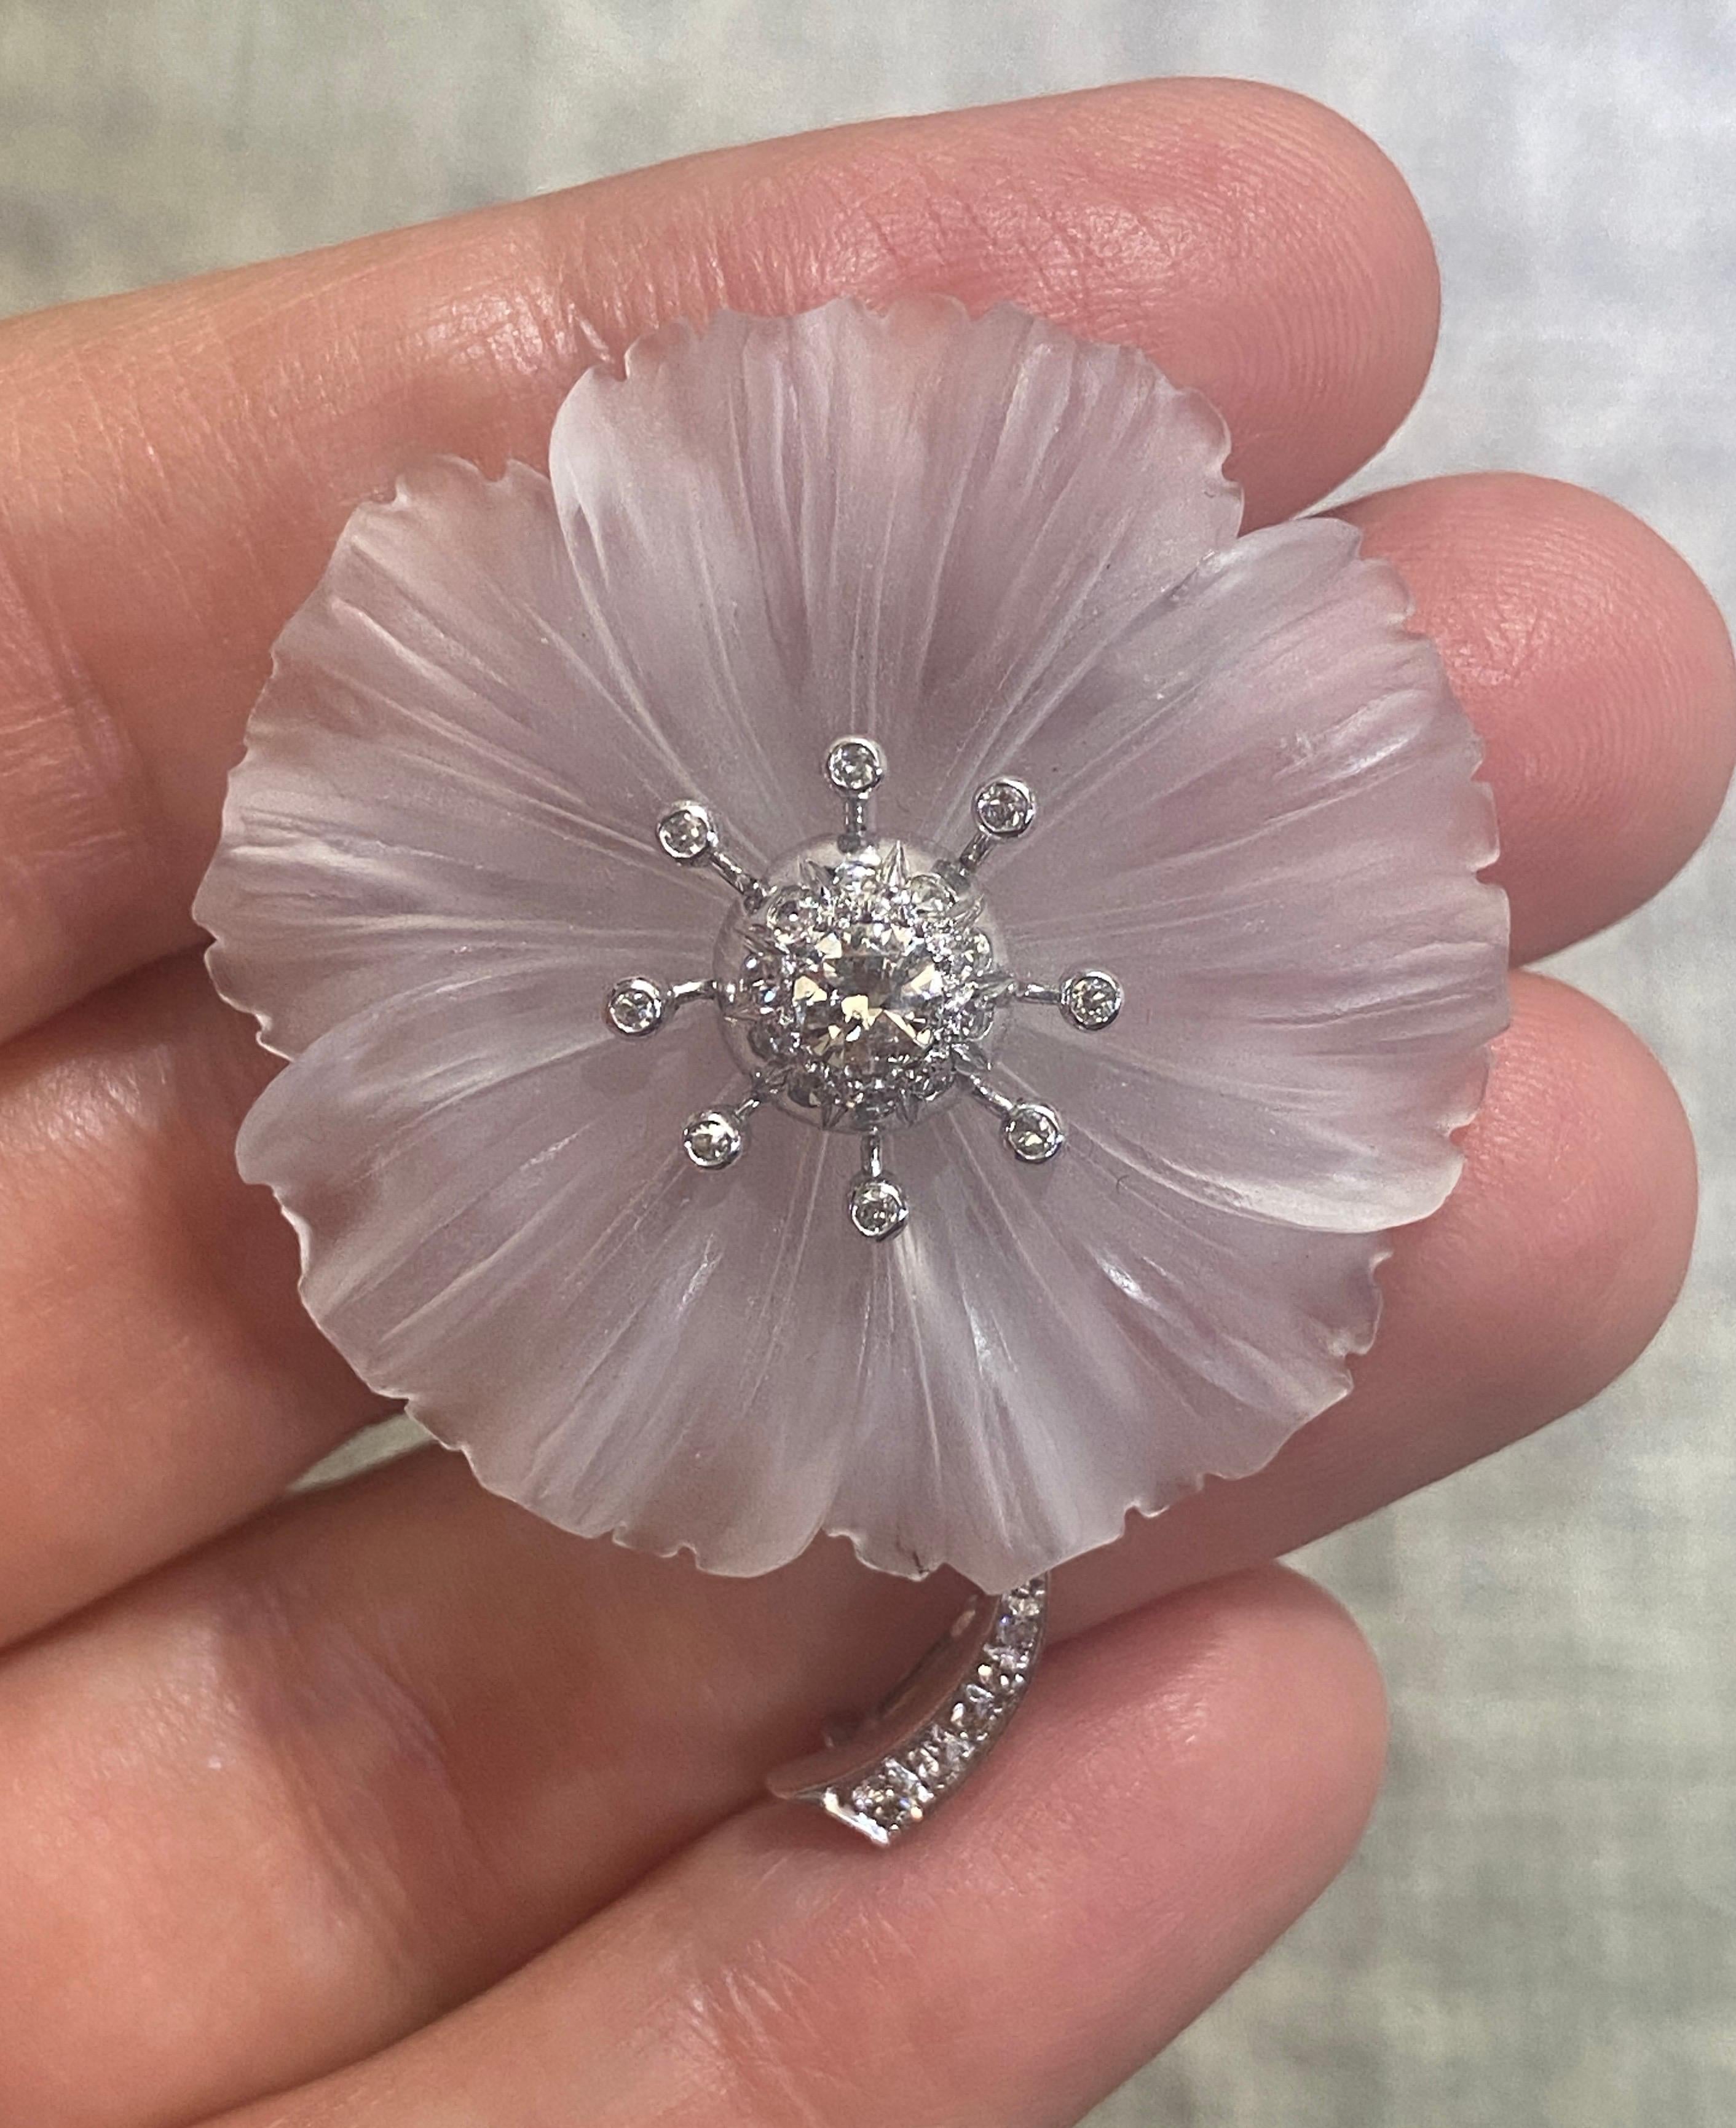 Diese atemberaubend elegante Brosche mit Bergkristall und Diamanten wurde in den 1930er Jahren in Österreich hergestellt. Der Bergkristall ist meisterhaft geschnitzt und verleiht der Blume das Aussehen von durchscheinenden Blütenblättern. Obwohl